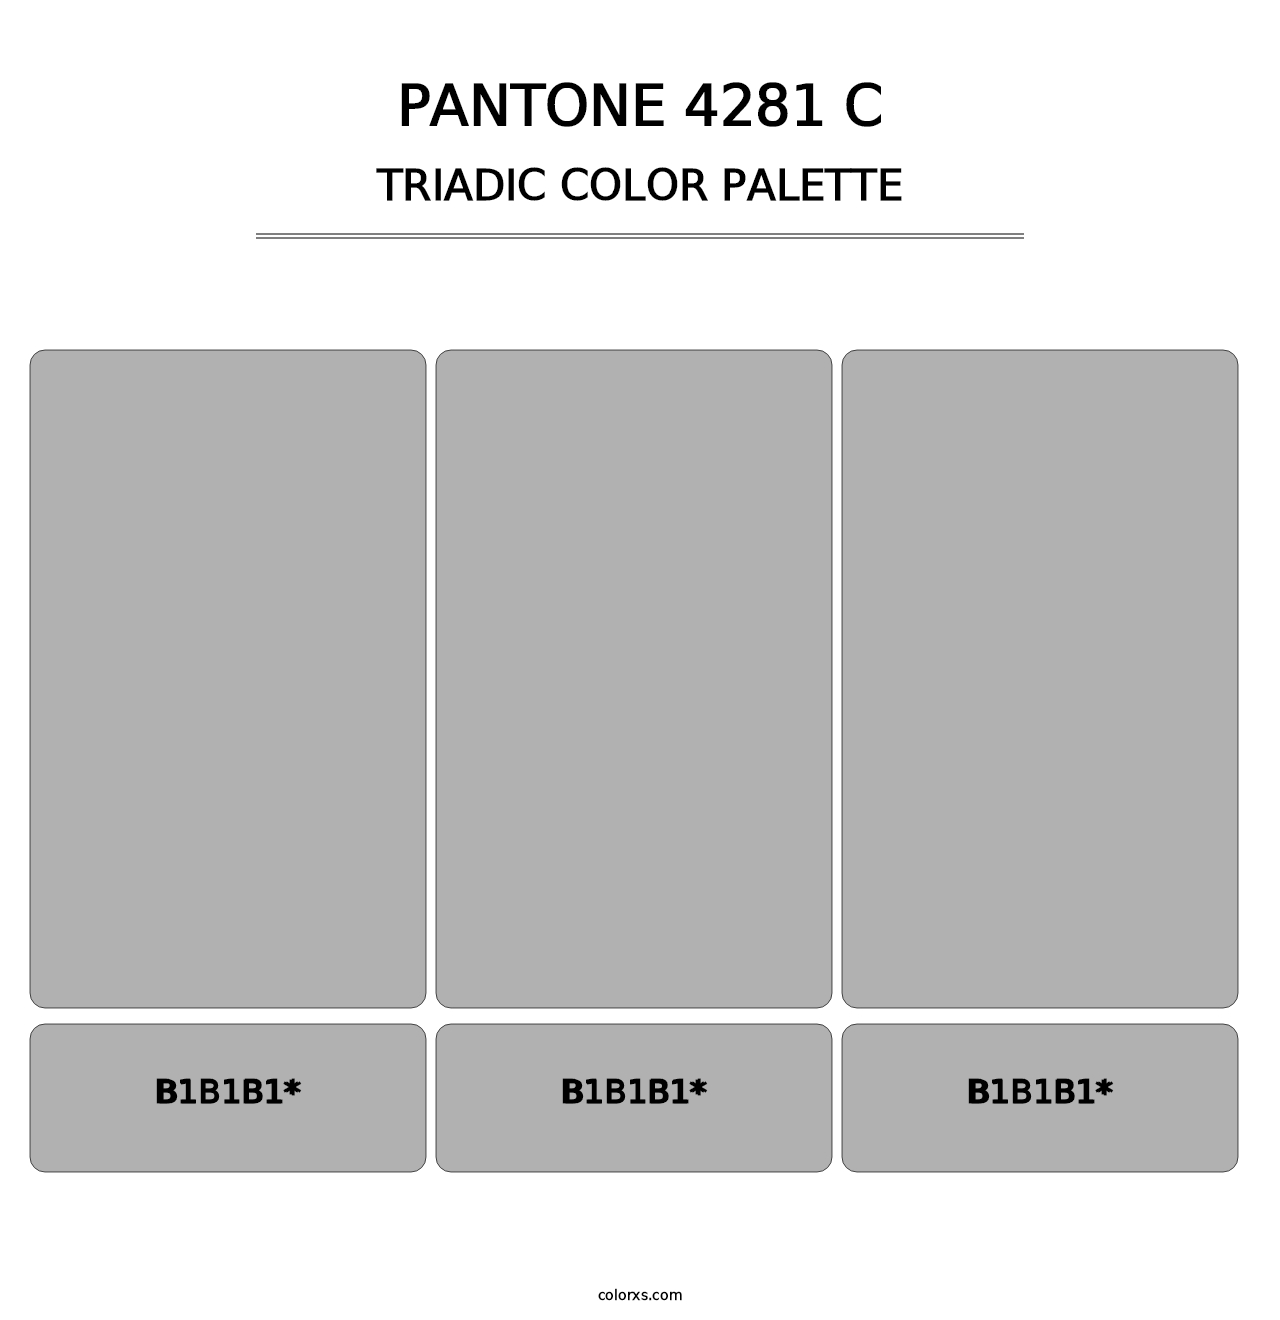 PANTONE 4281 C - Triadic Color Palette